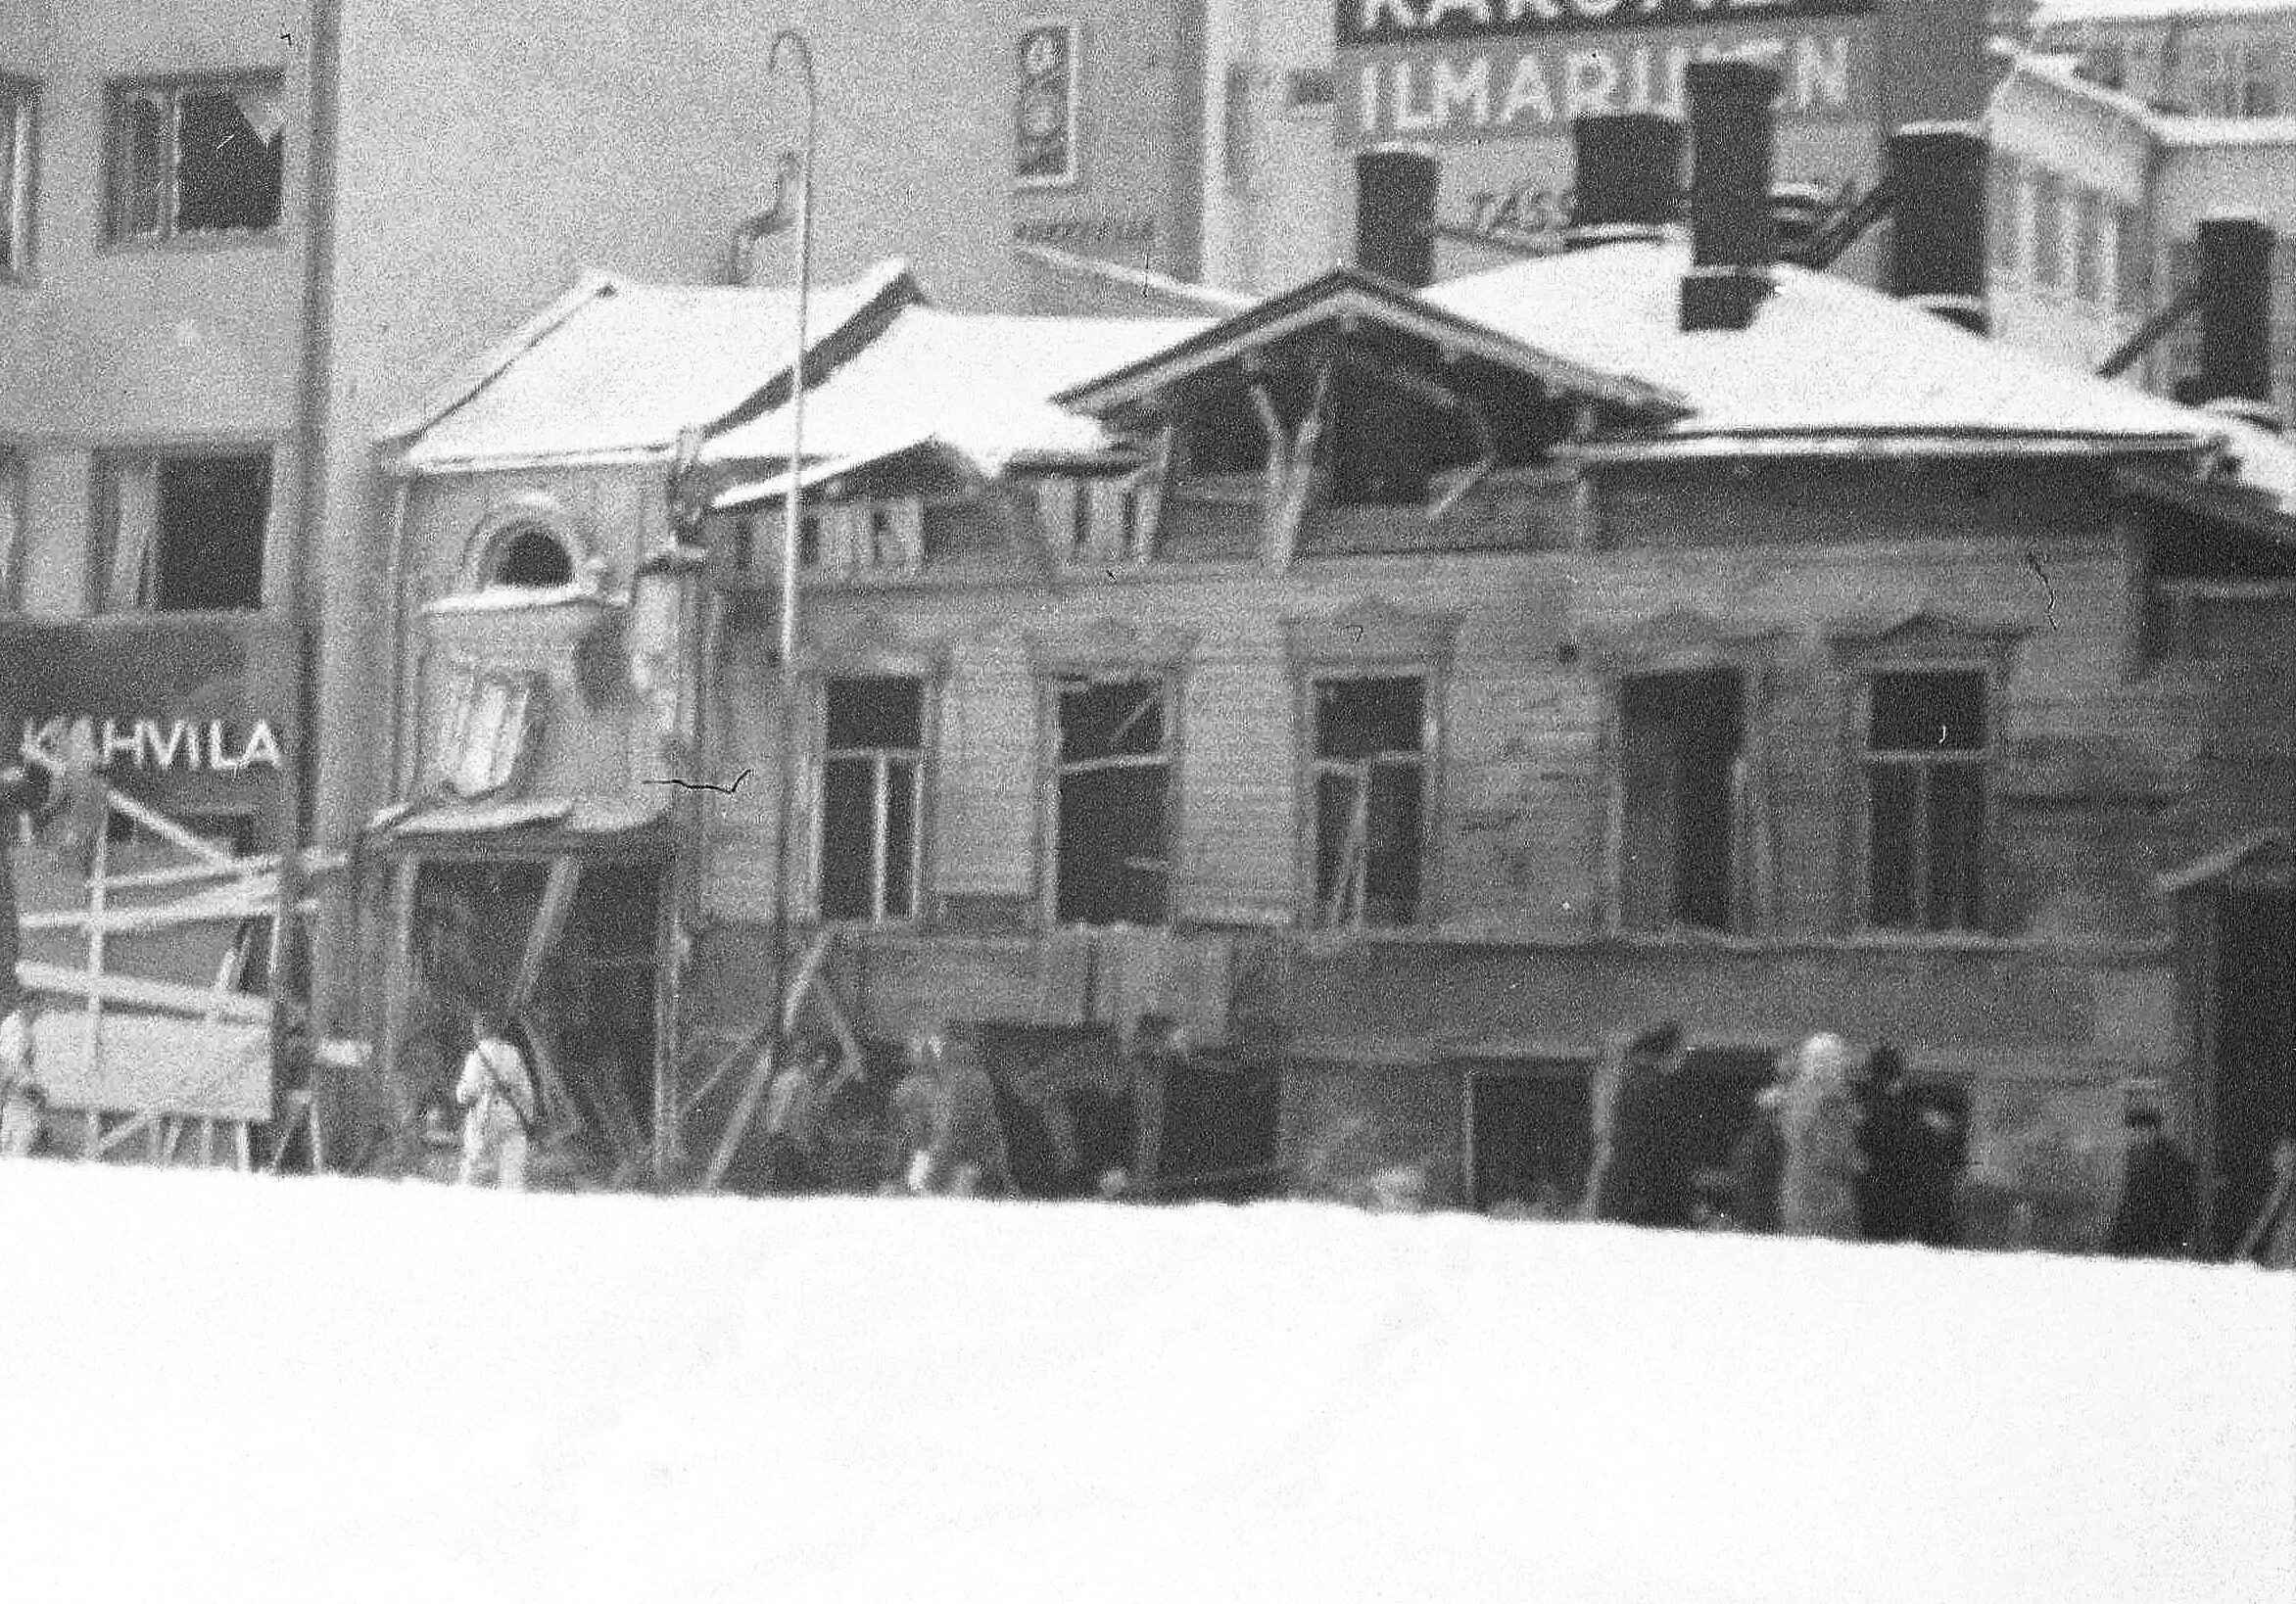 1940. Возможно во втором доме семья проживала. Здесь дом пострадал от Зимней войны.